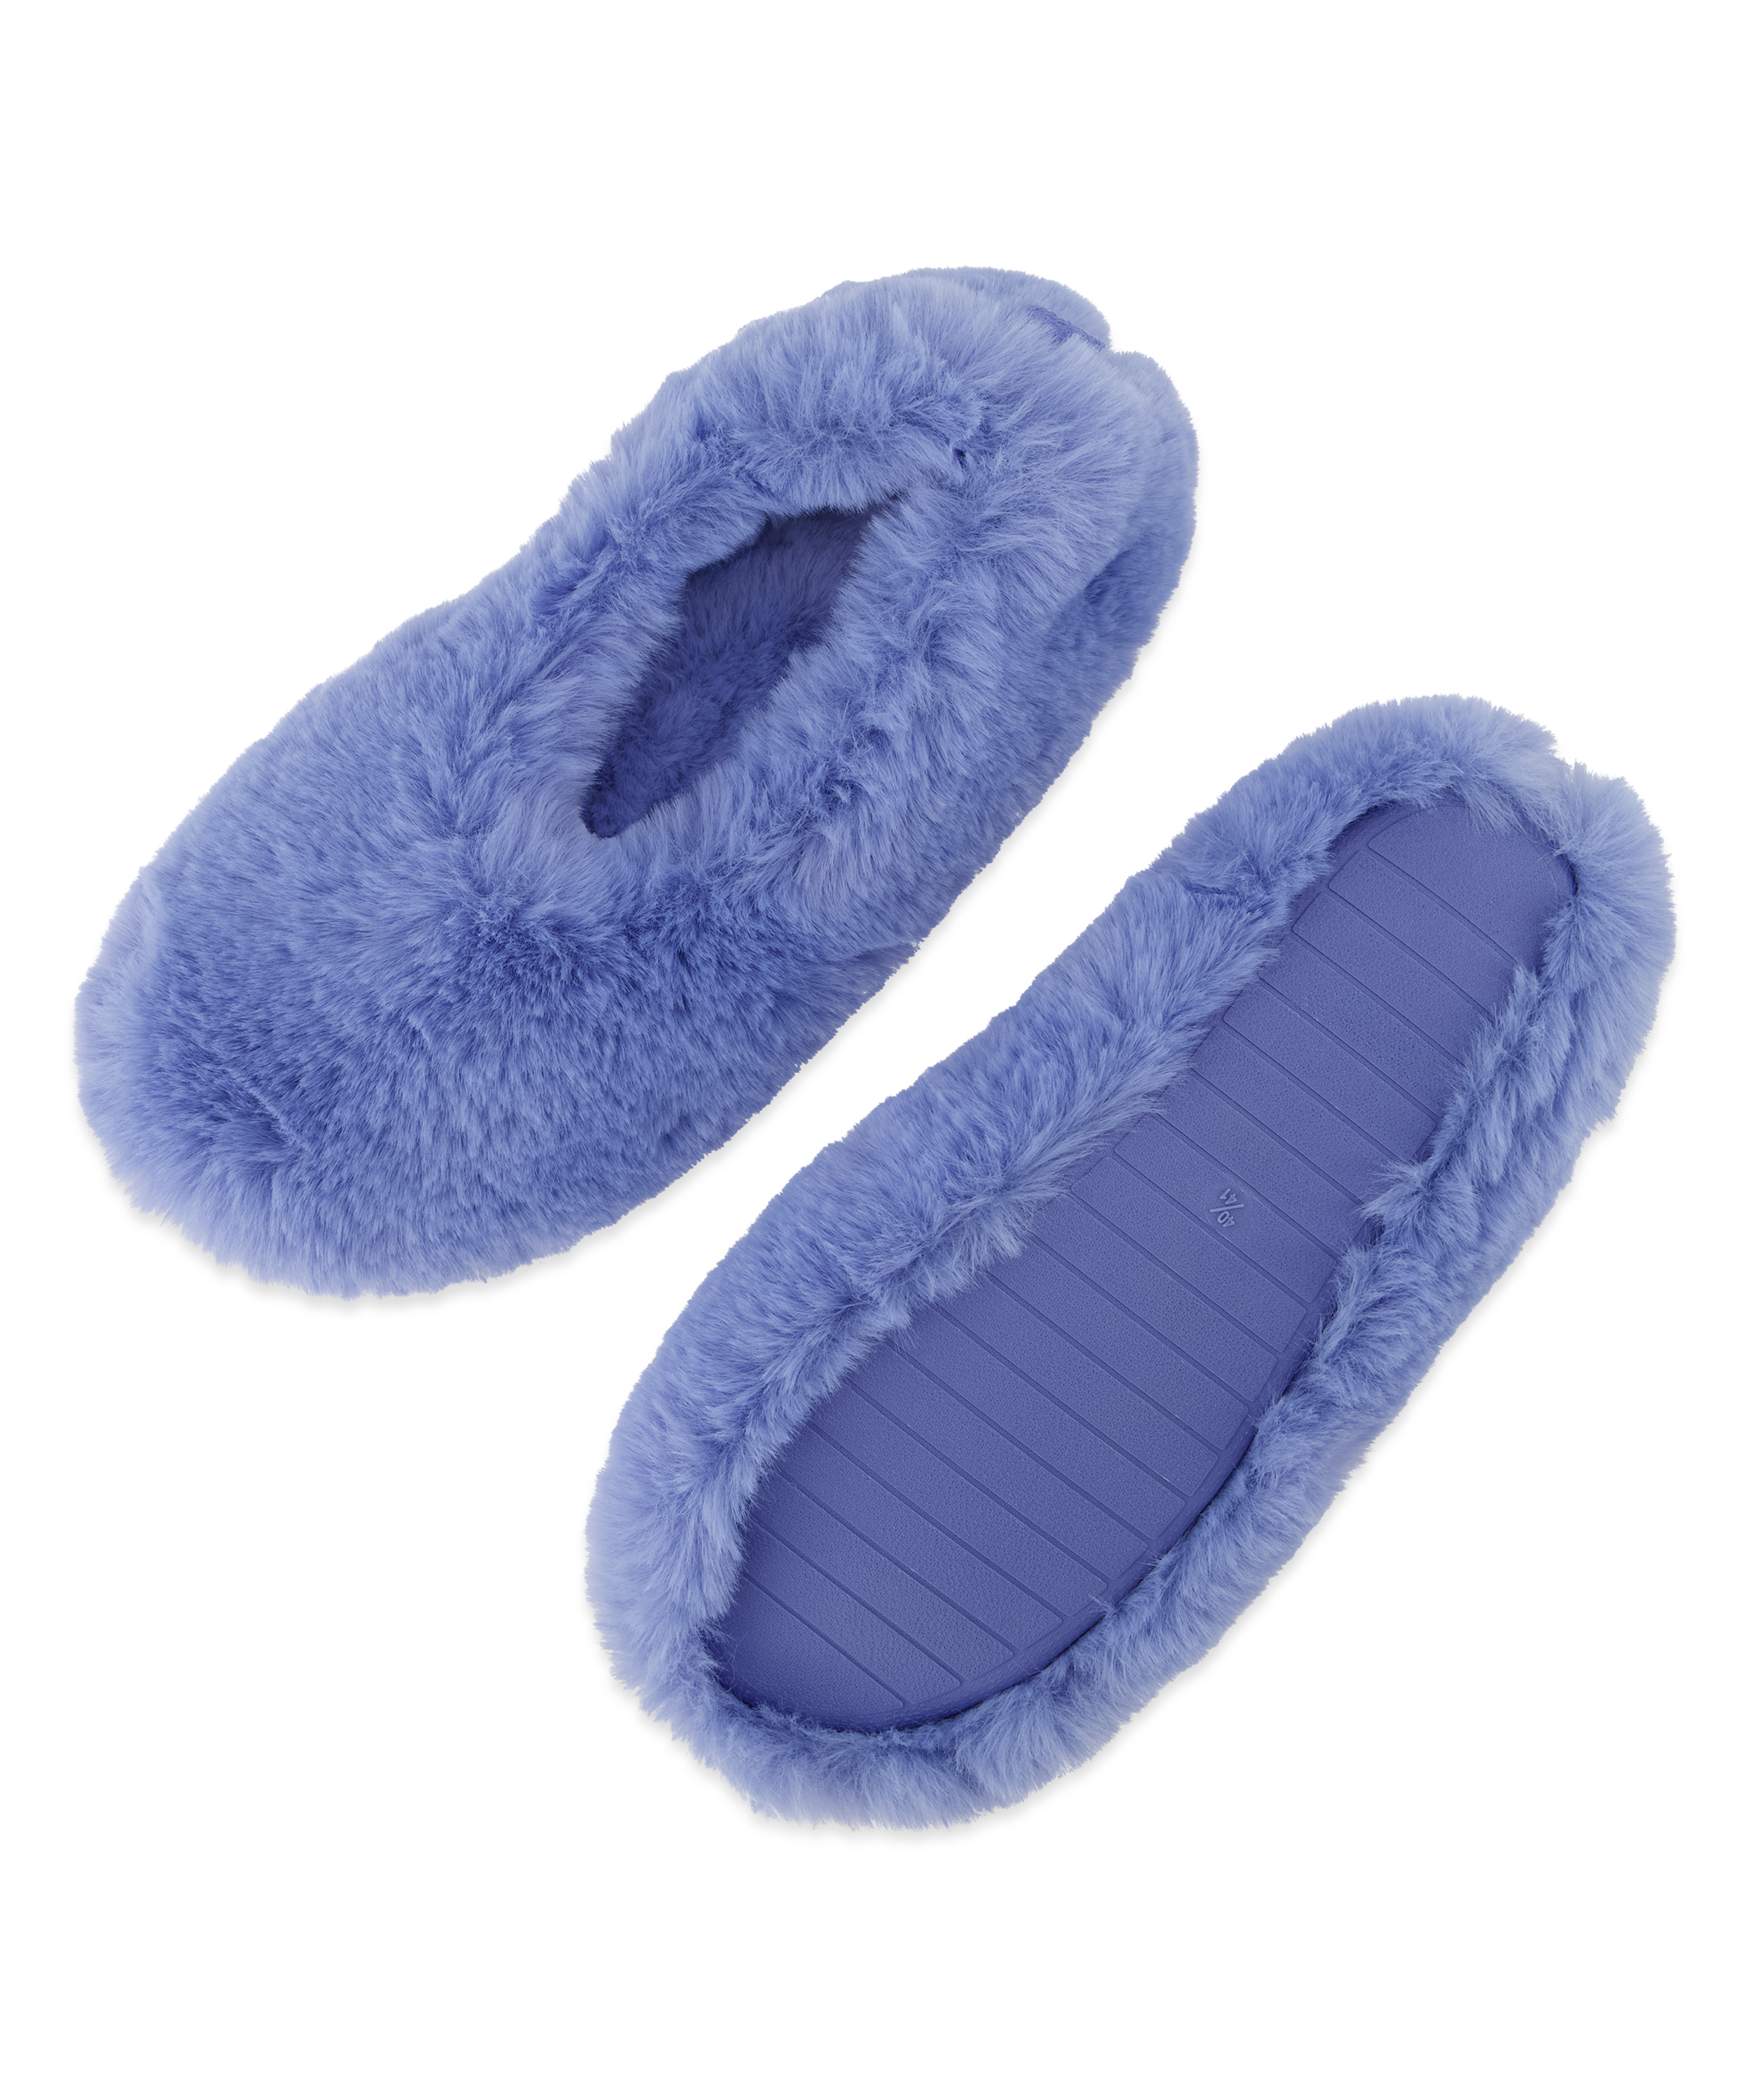 Ballerina slippers, Blue, main